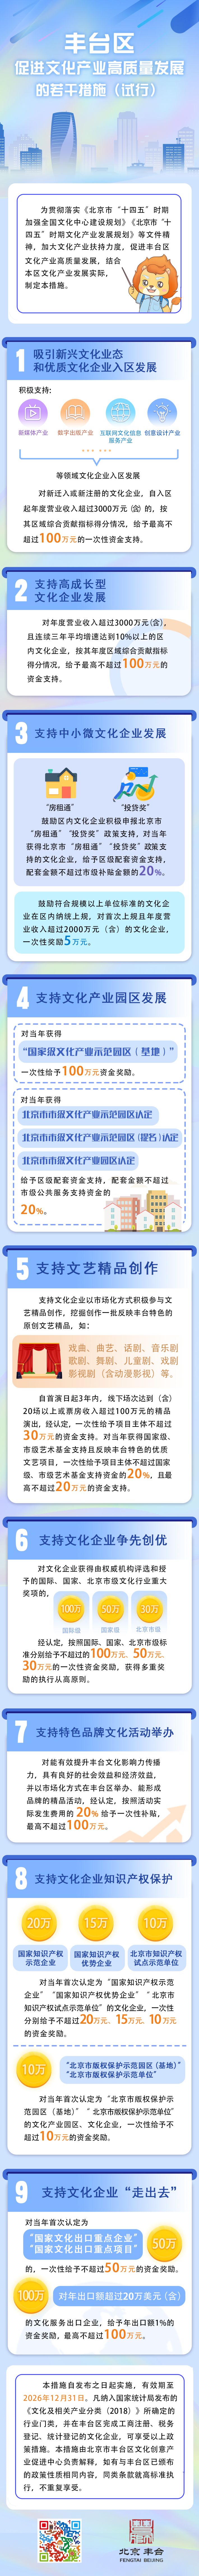 北京丰台发布“文化九条”，斯玛特教育集团与丰台共同发展，共同成长